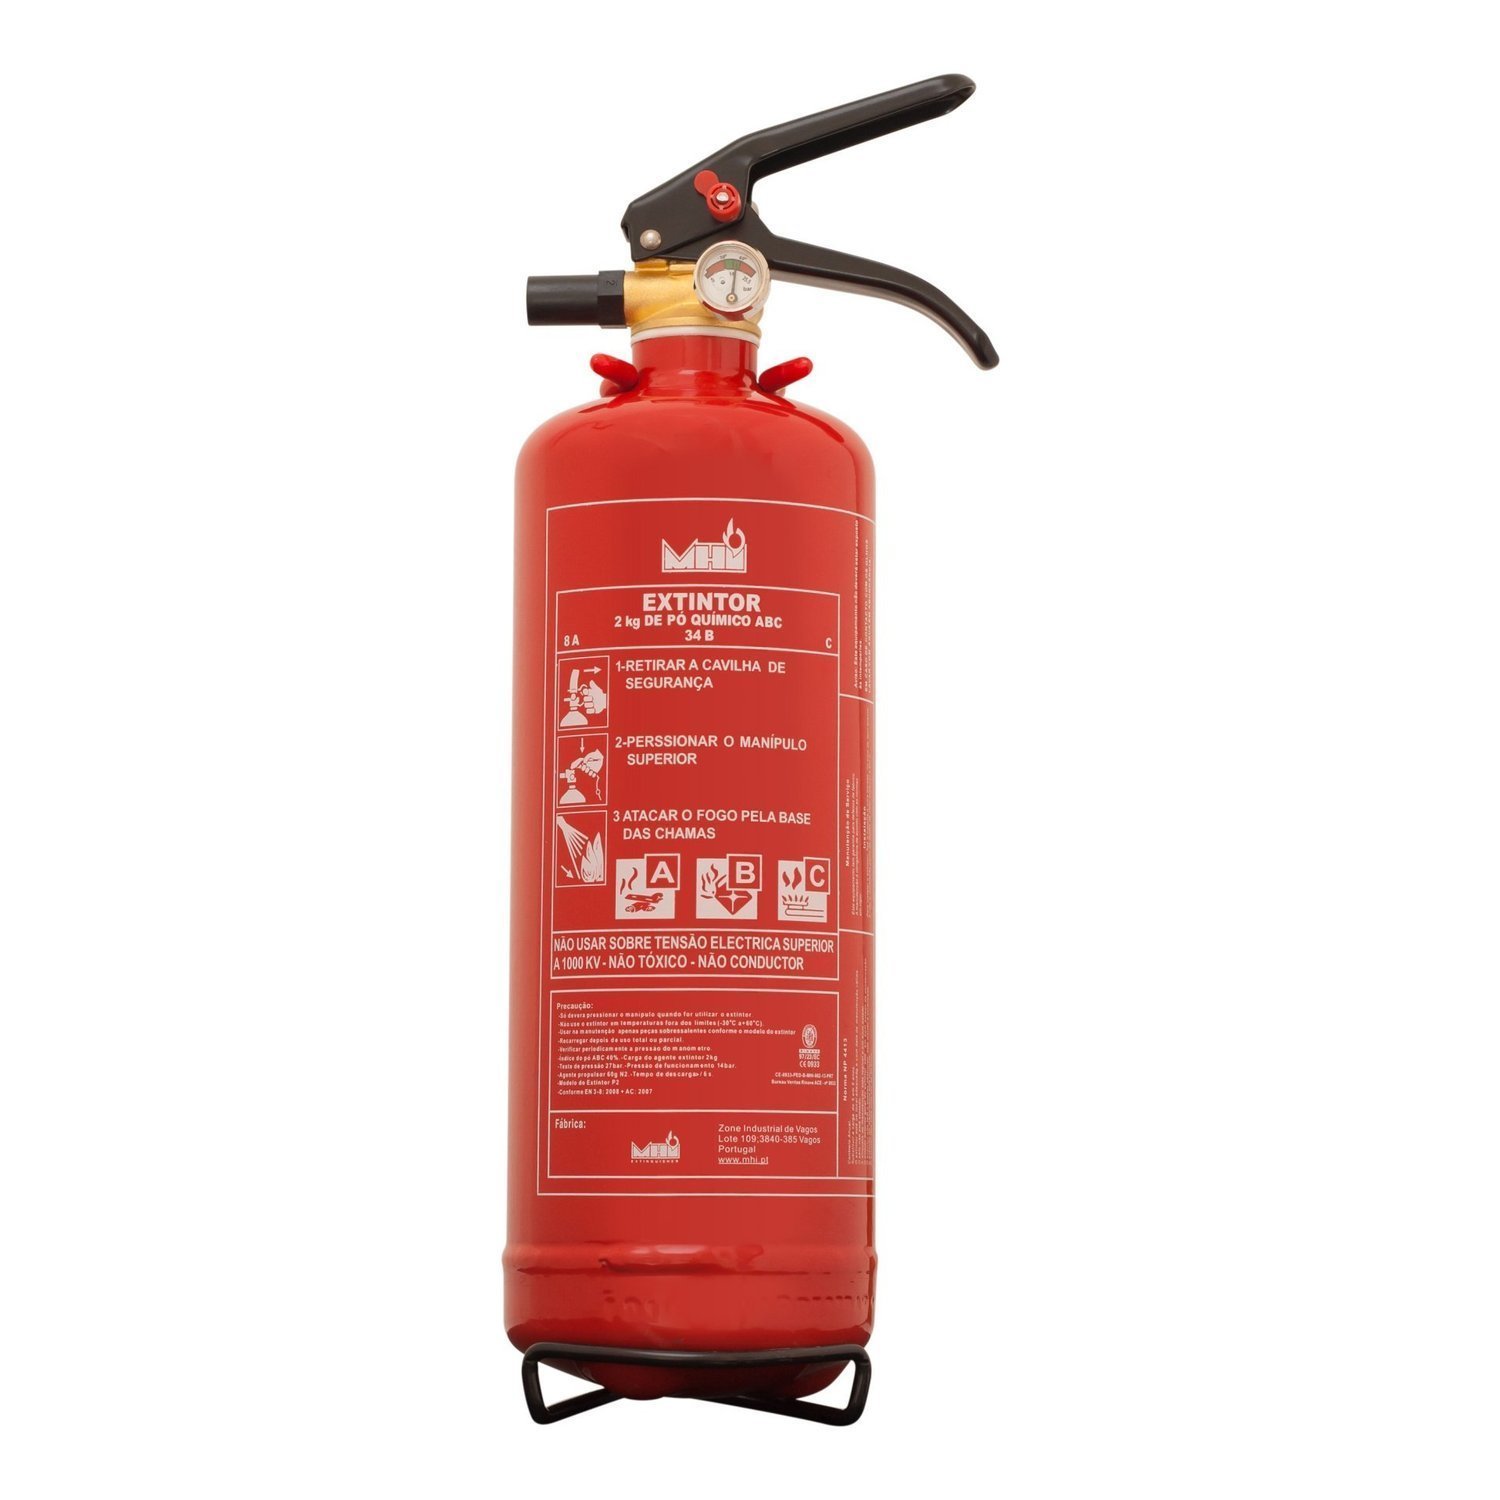 Extintores ABC 2Kg - Temos o Melhor Preço em Extintores